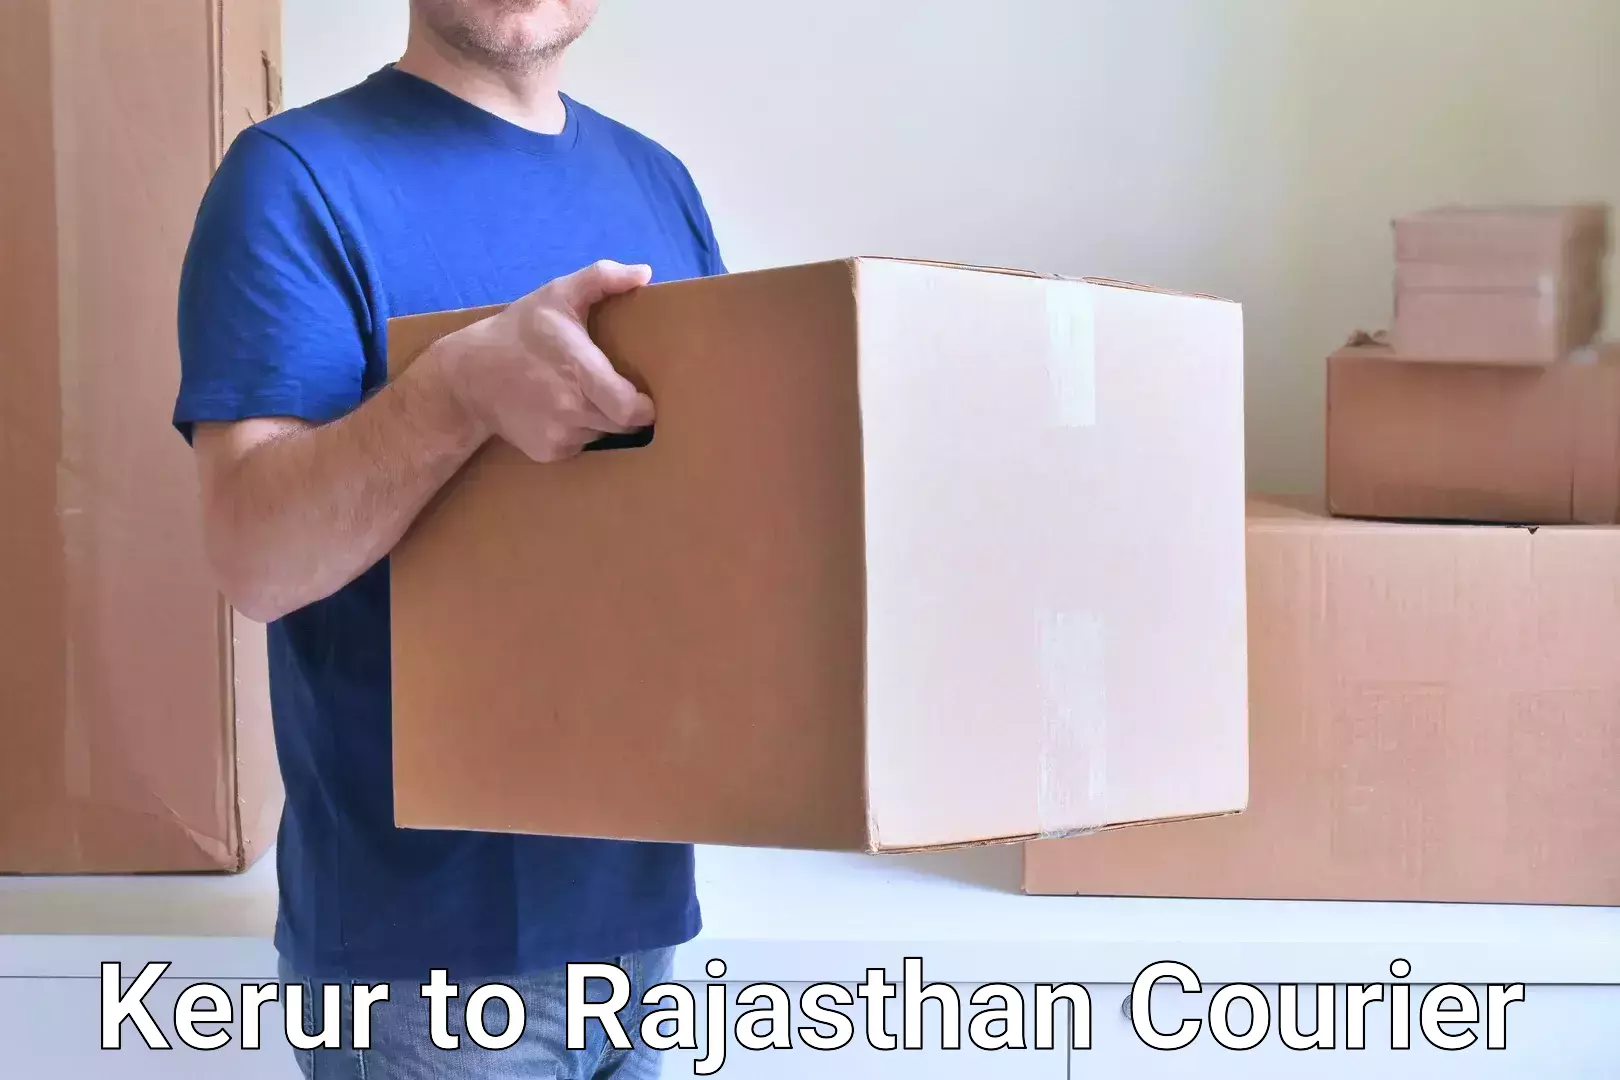 Reliable courier service Kerur to Dholpur